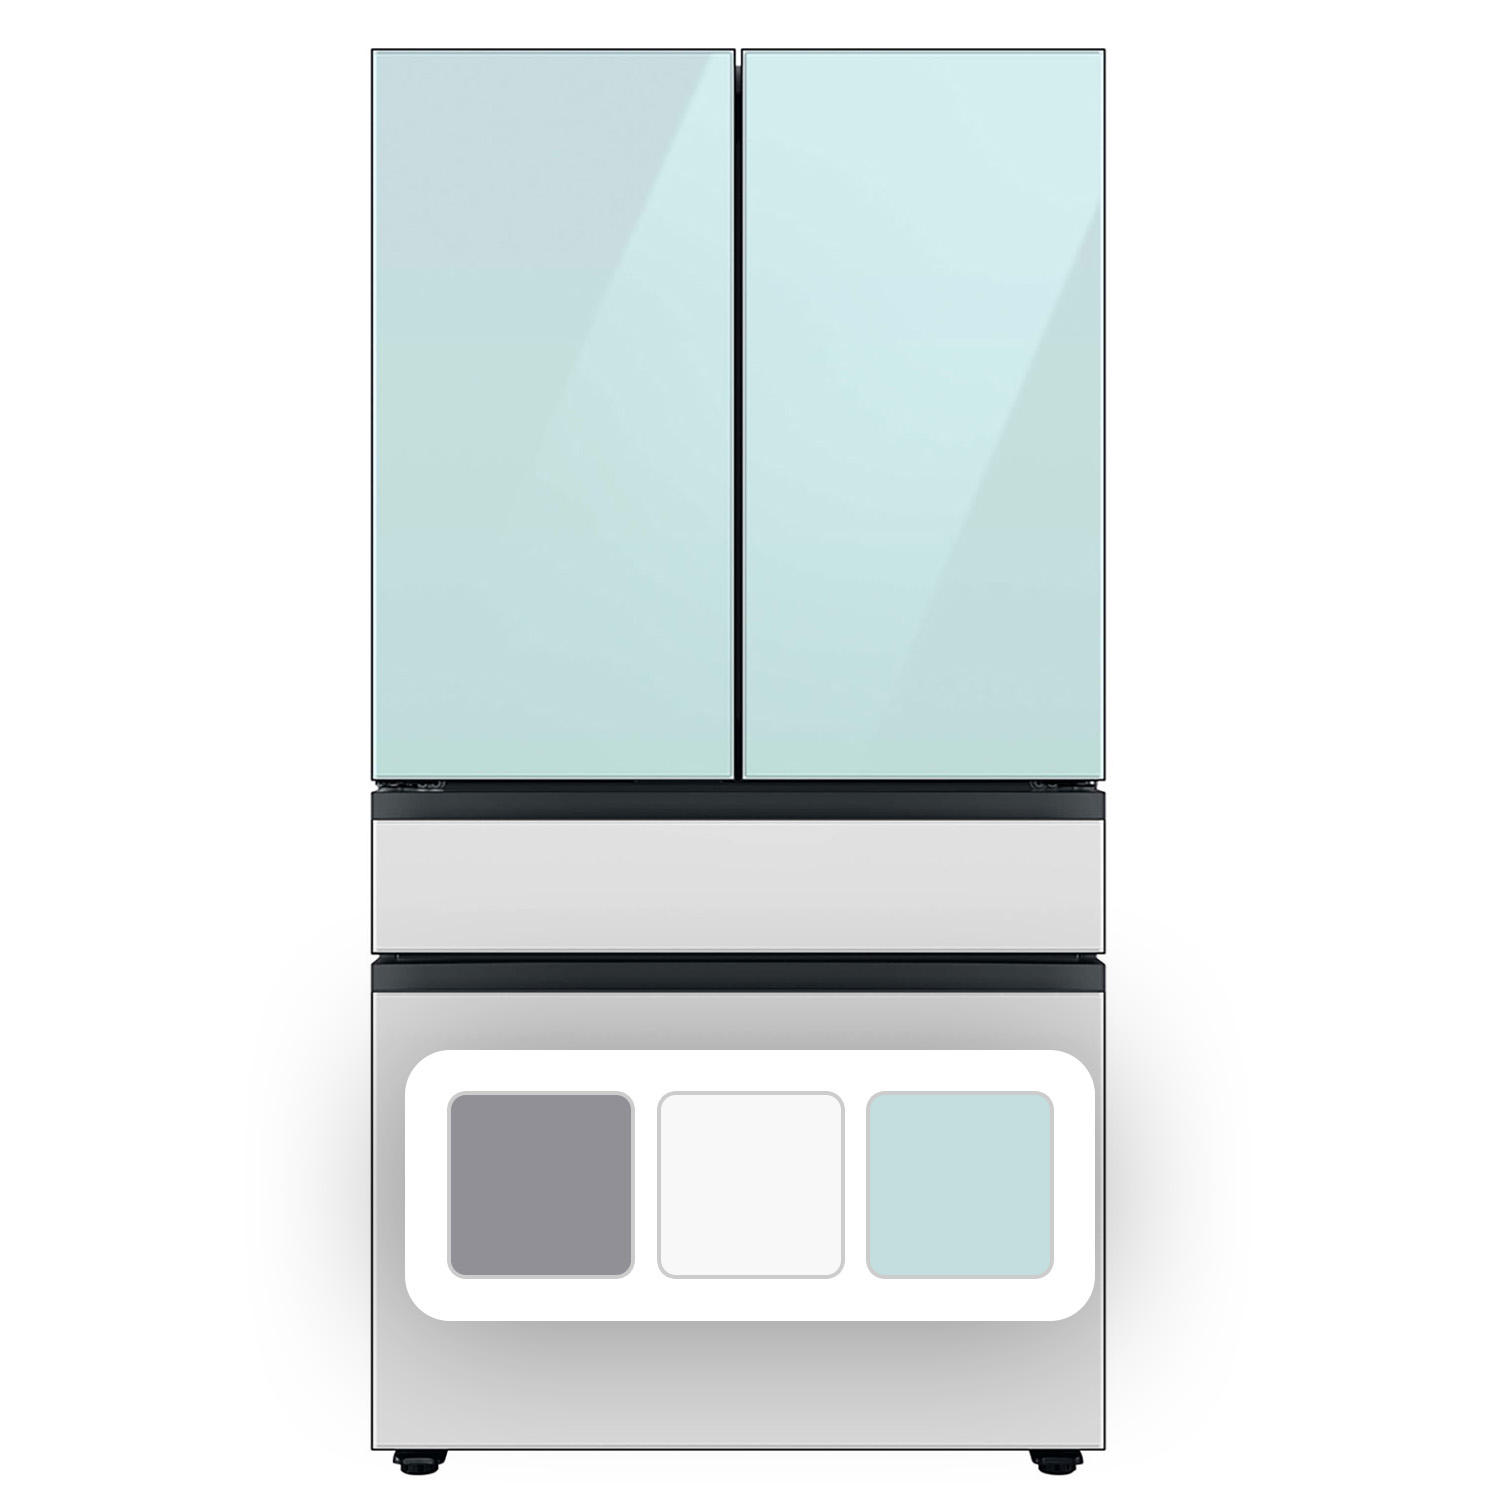 Samsung Bespoke 29 Cu. Ft. 4-Door French Door Refrigerator with Beverage Center (Blue)